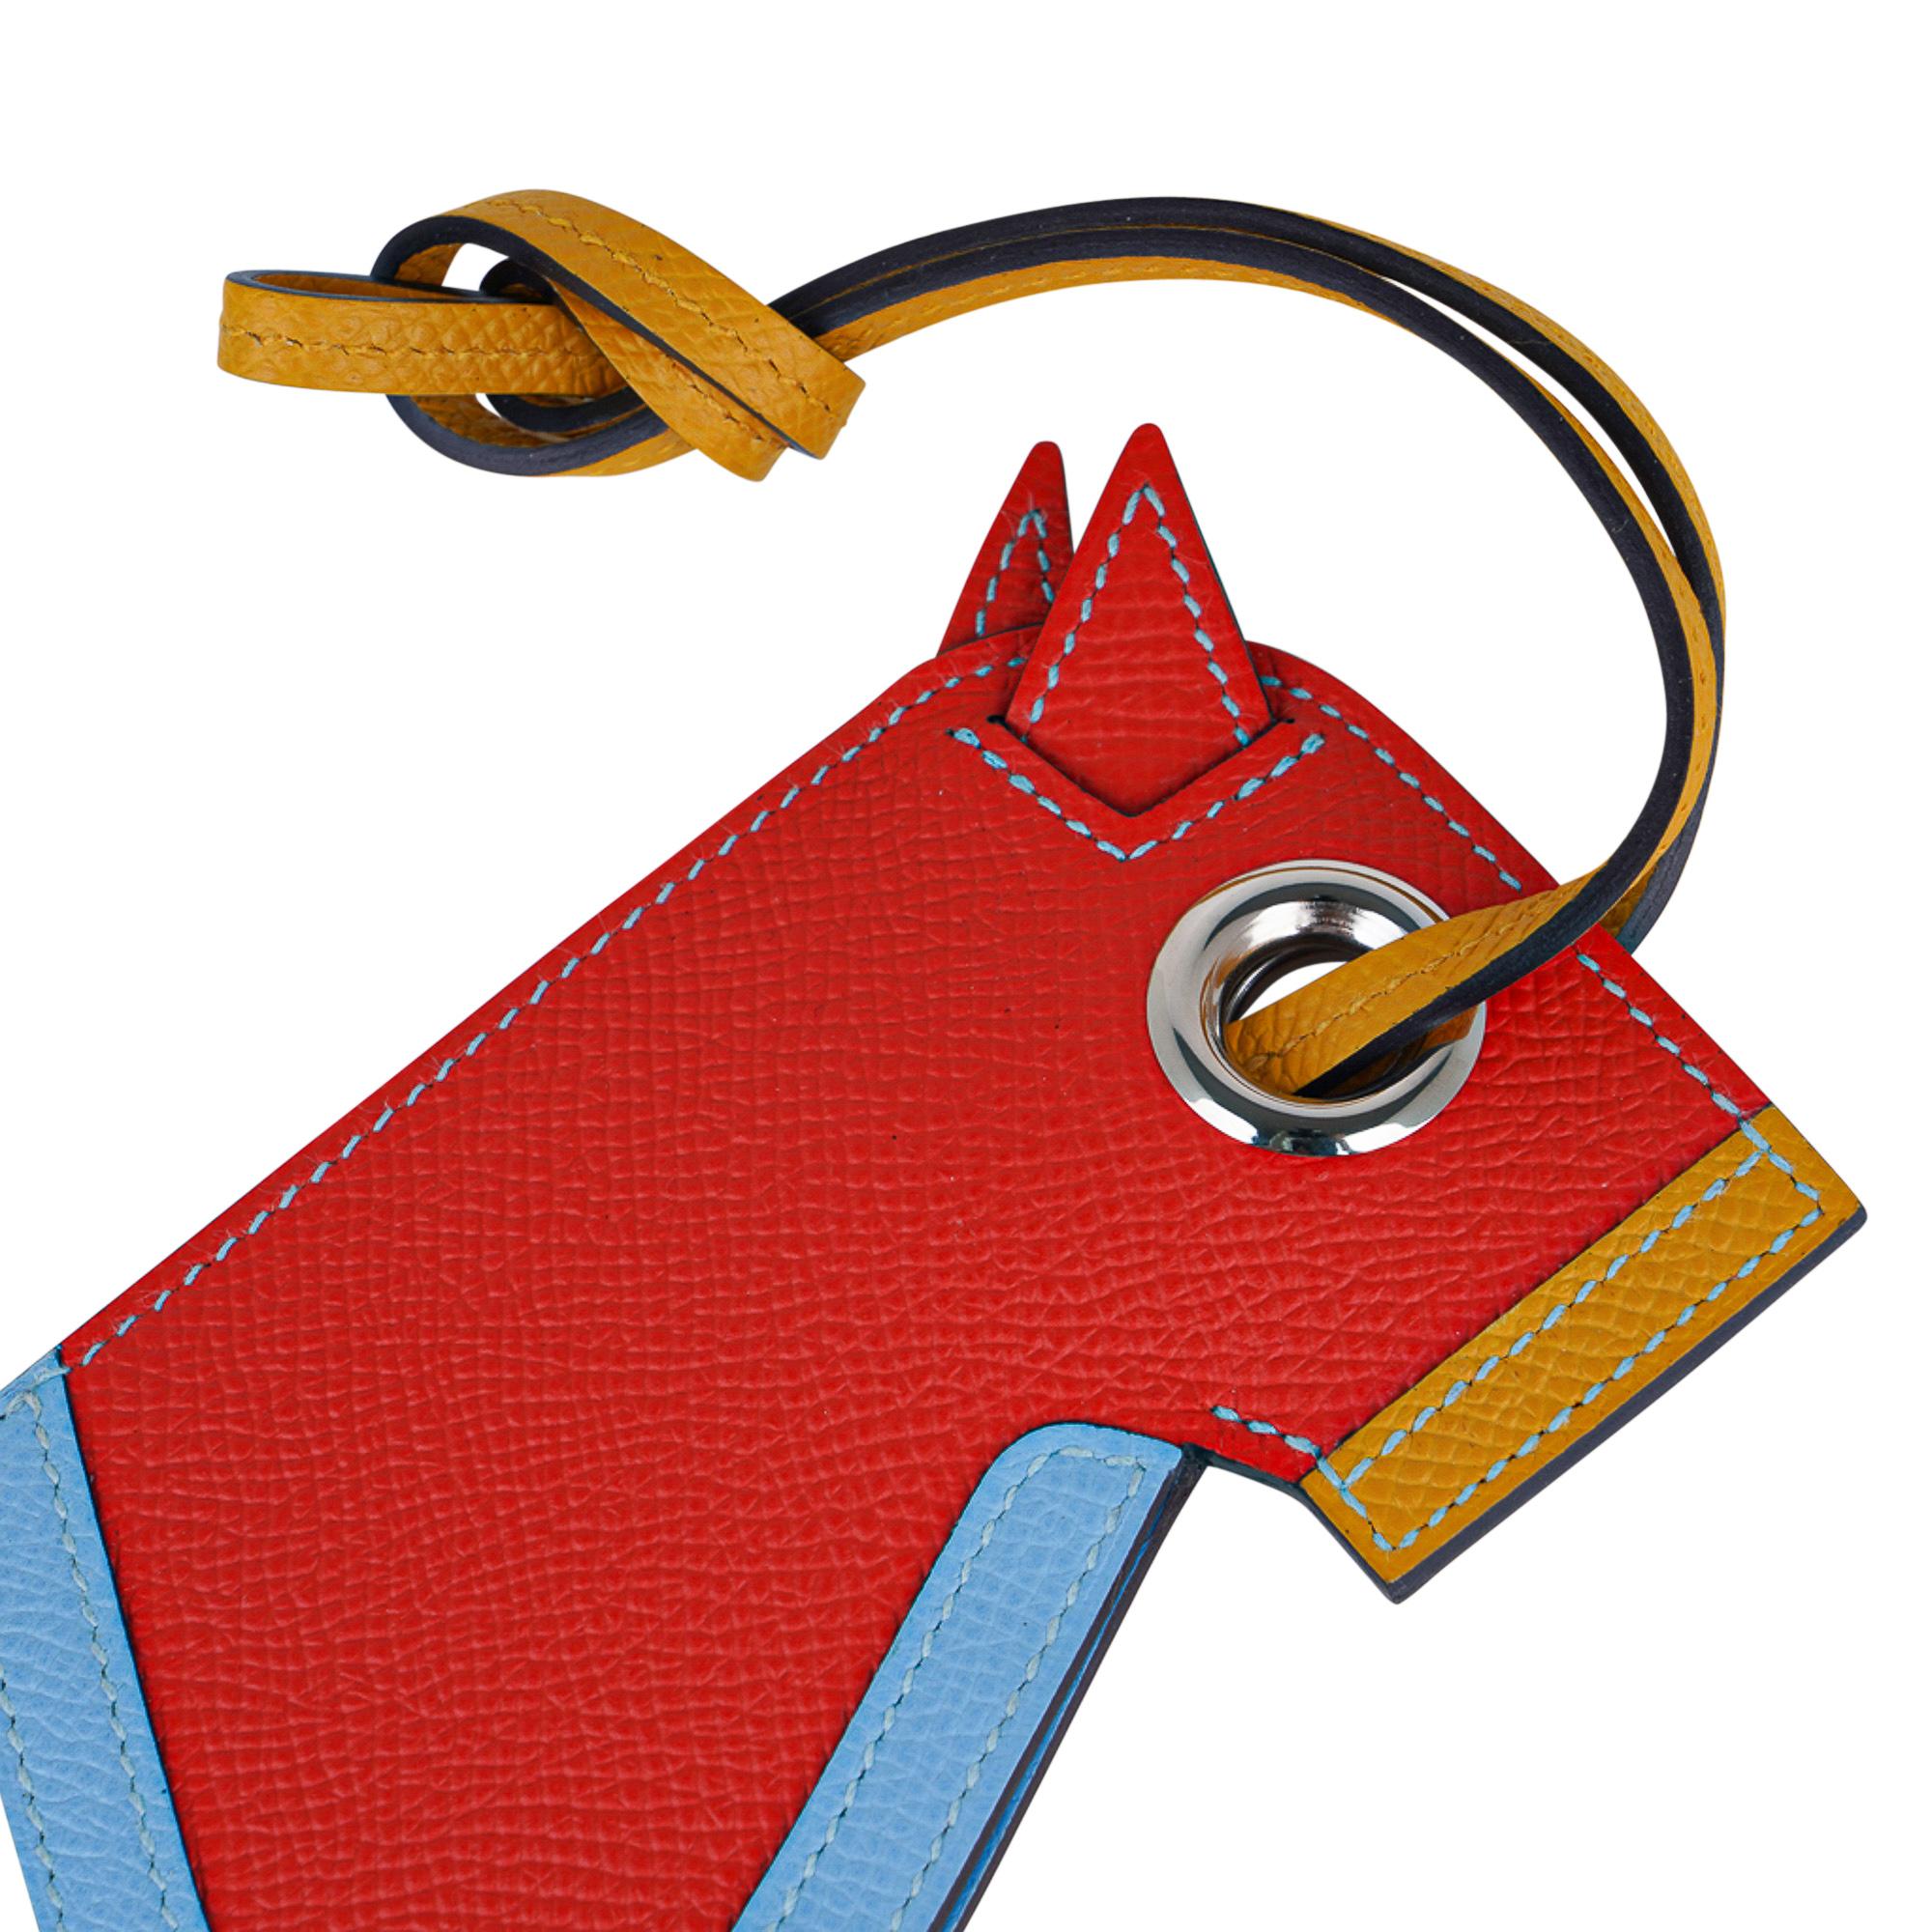 Mightychic bietet eine garantiert authentische begehrten Hermes Camail Key Ring in Capucine vorgestellt,  Jaune Ambre und Bleu Celeste.
Eine moderne Interpretation eines Pferdekopfes aus Epsom-Leder mit verstecktem Schlüsselring.
Charmant und